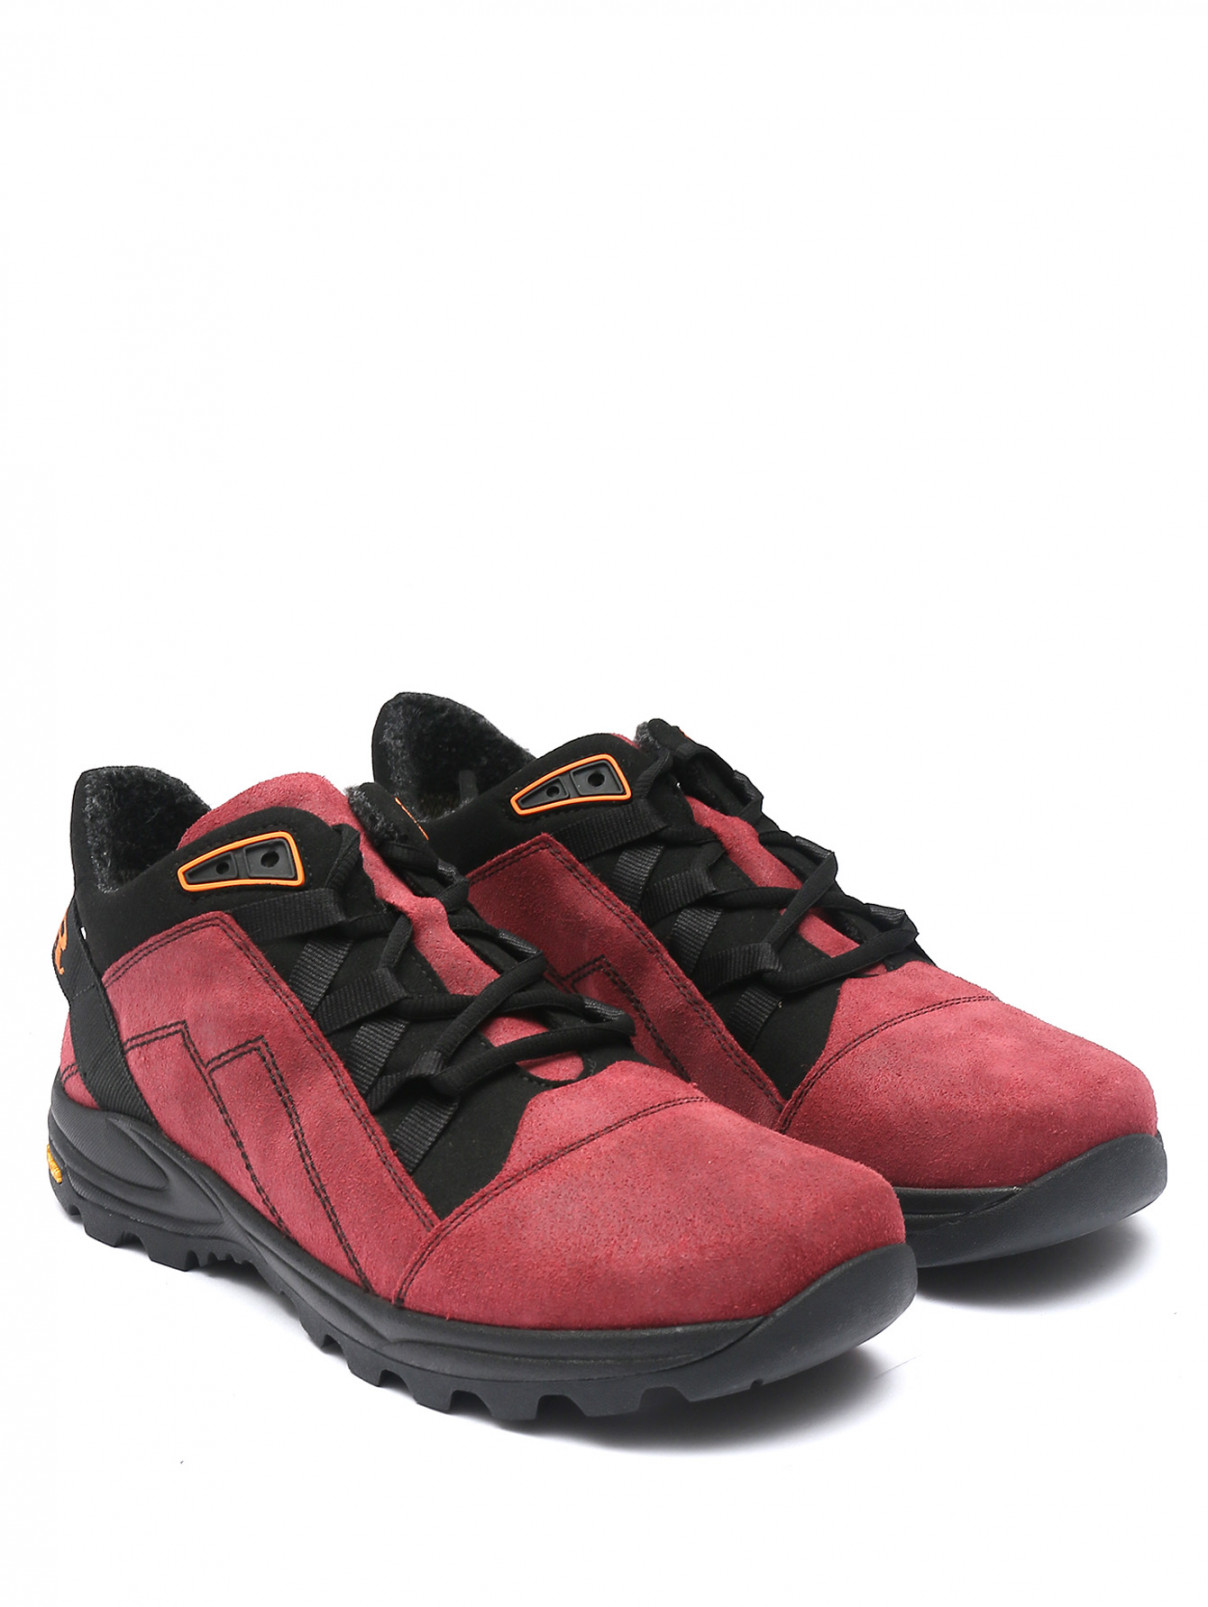 Комбинированные ботинки на шнурках BAER  –  Общий вид  – Цвет:  Фиолетовый